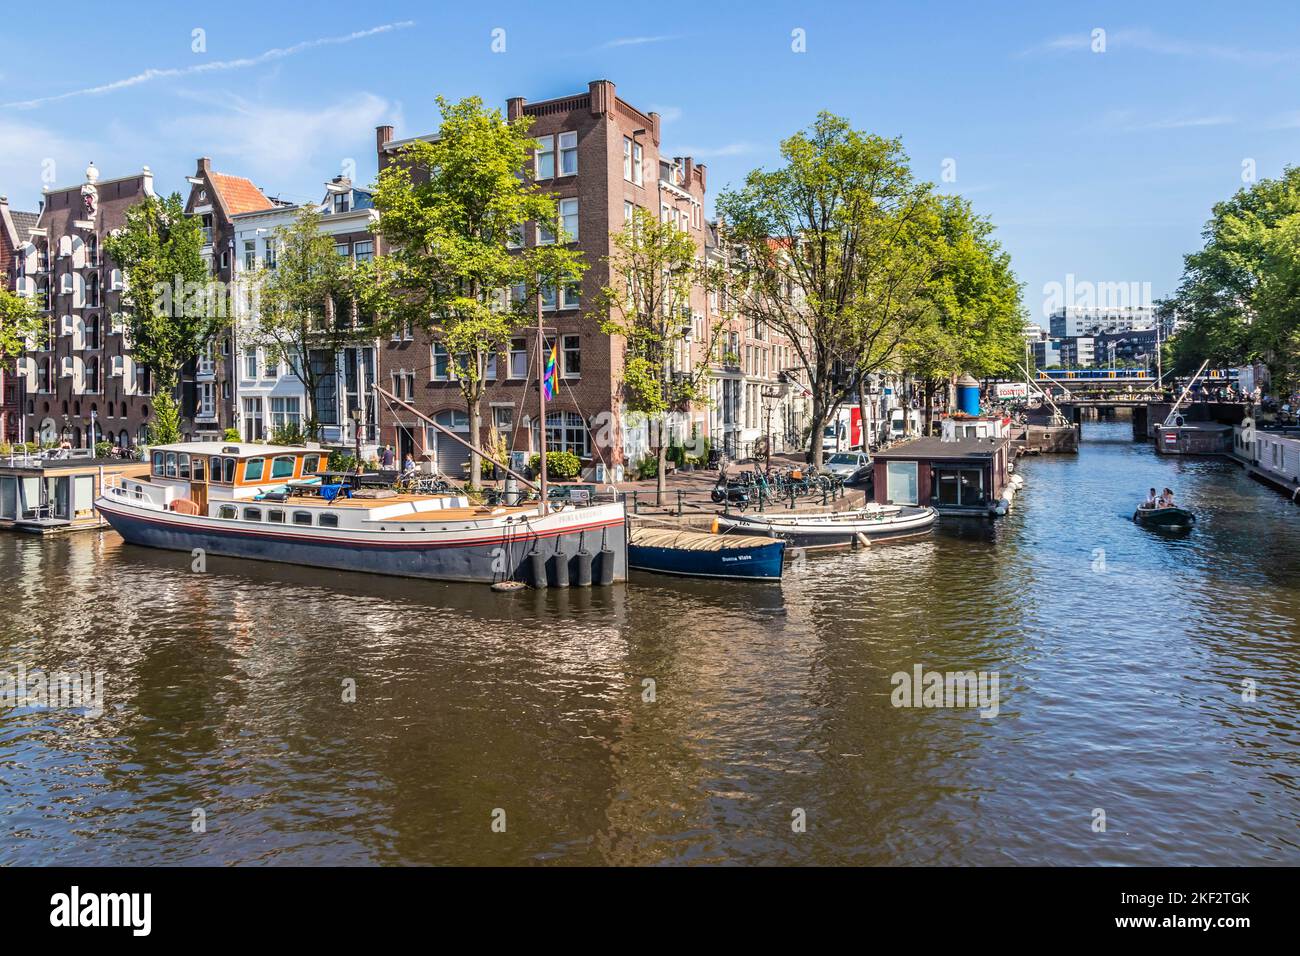 Cruce de Brouwersgracht y Prinsengracht, Ámsterdam, Países Bajos Foto de stock